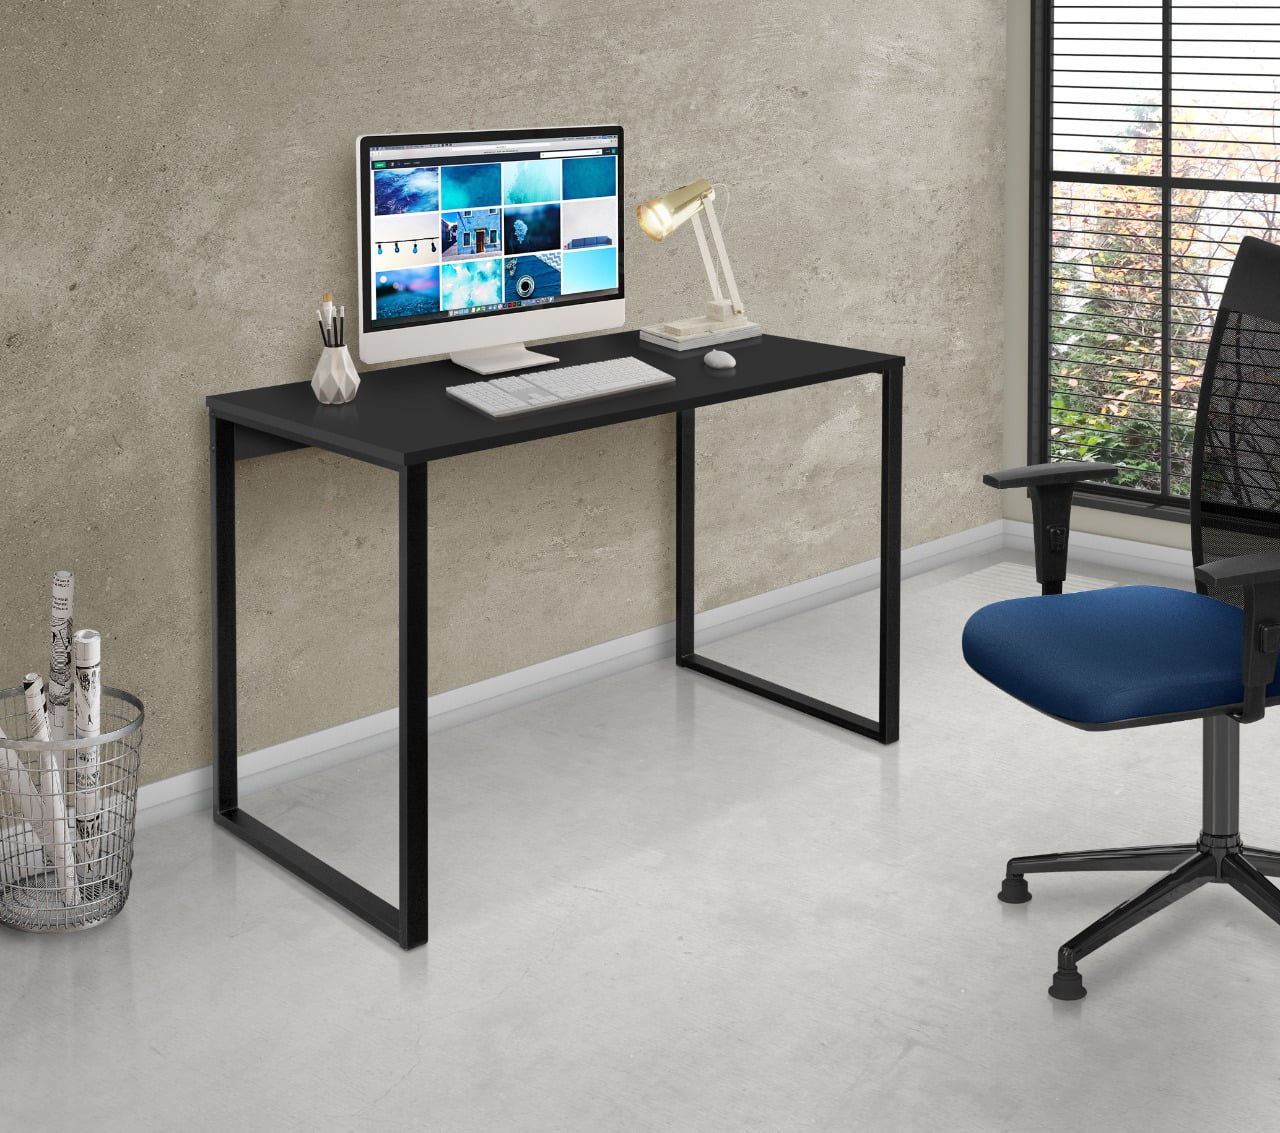 Mesa Escrivaninha para Estudos, Escritório-Office 120cm modelo CANCUN